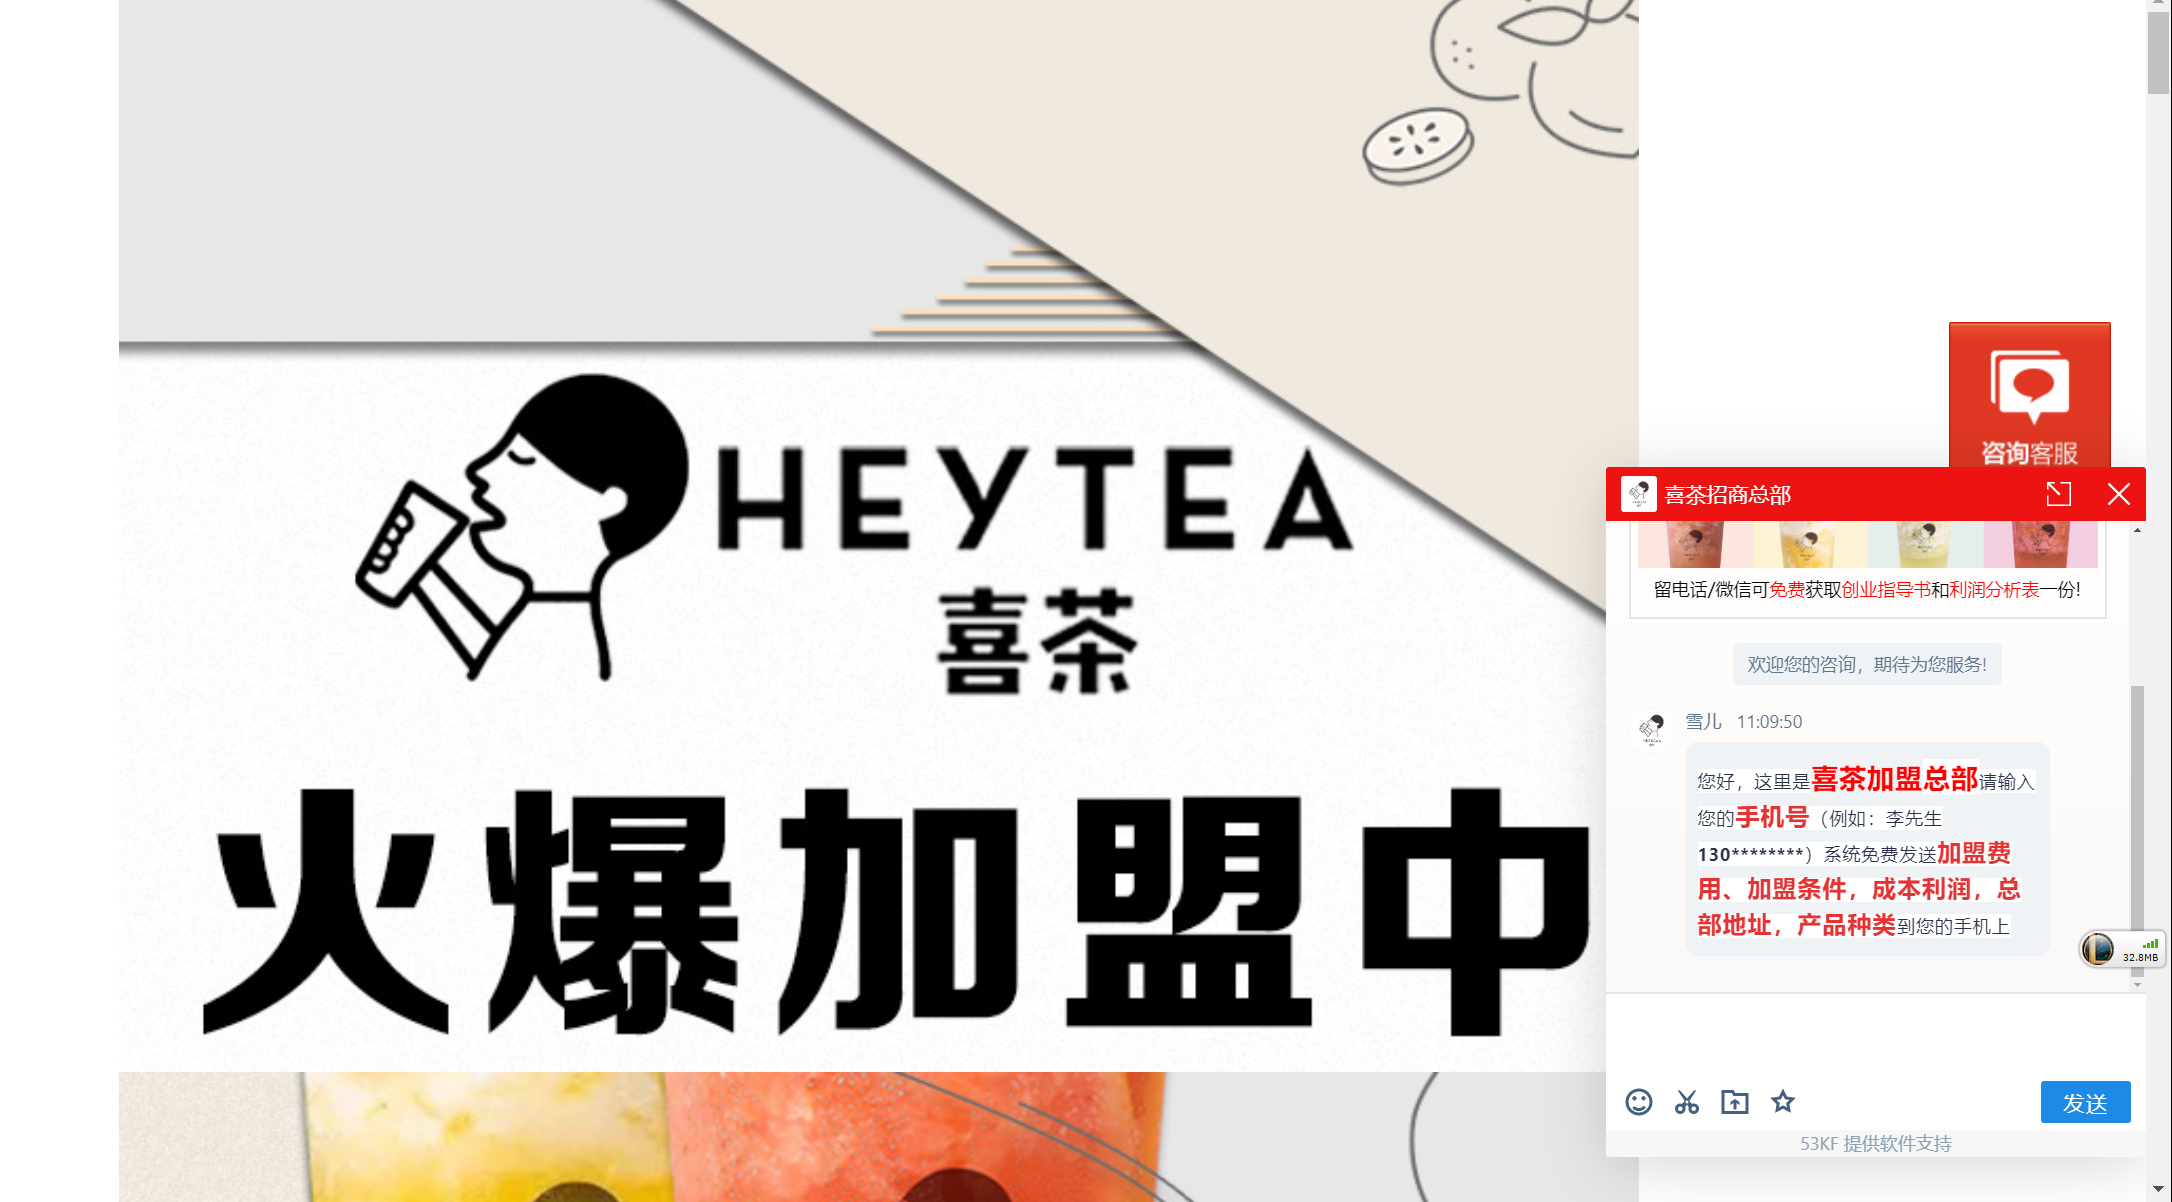 3月9日,按照相关线索,新京报记者试着搜索喜茶加盟等信息,出现名为